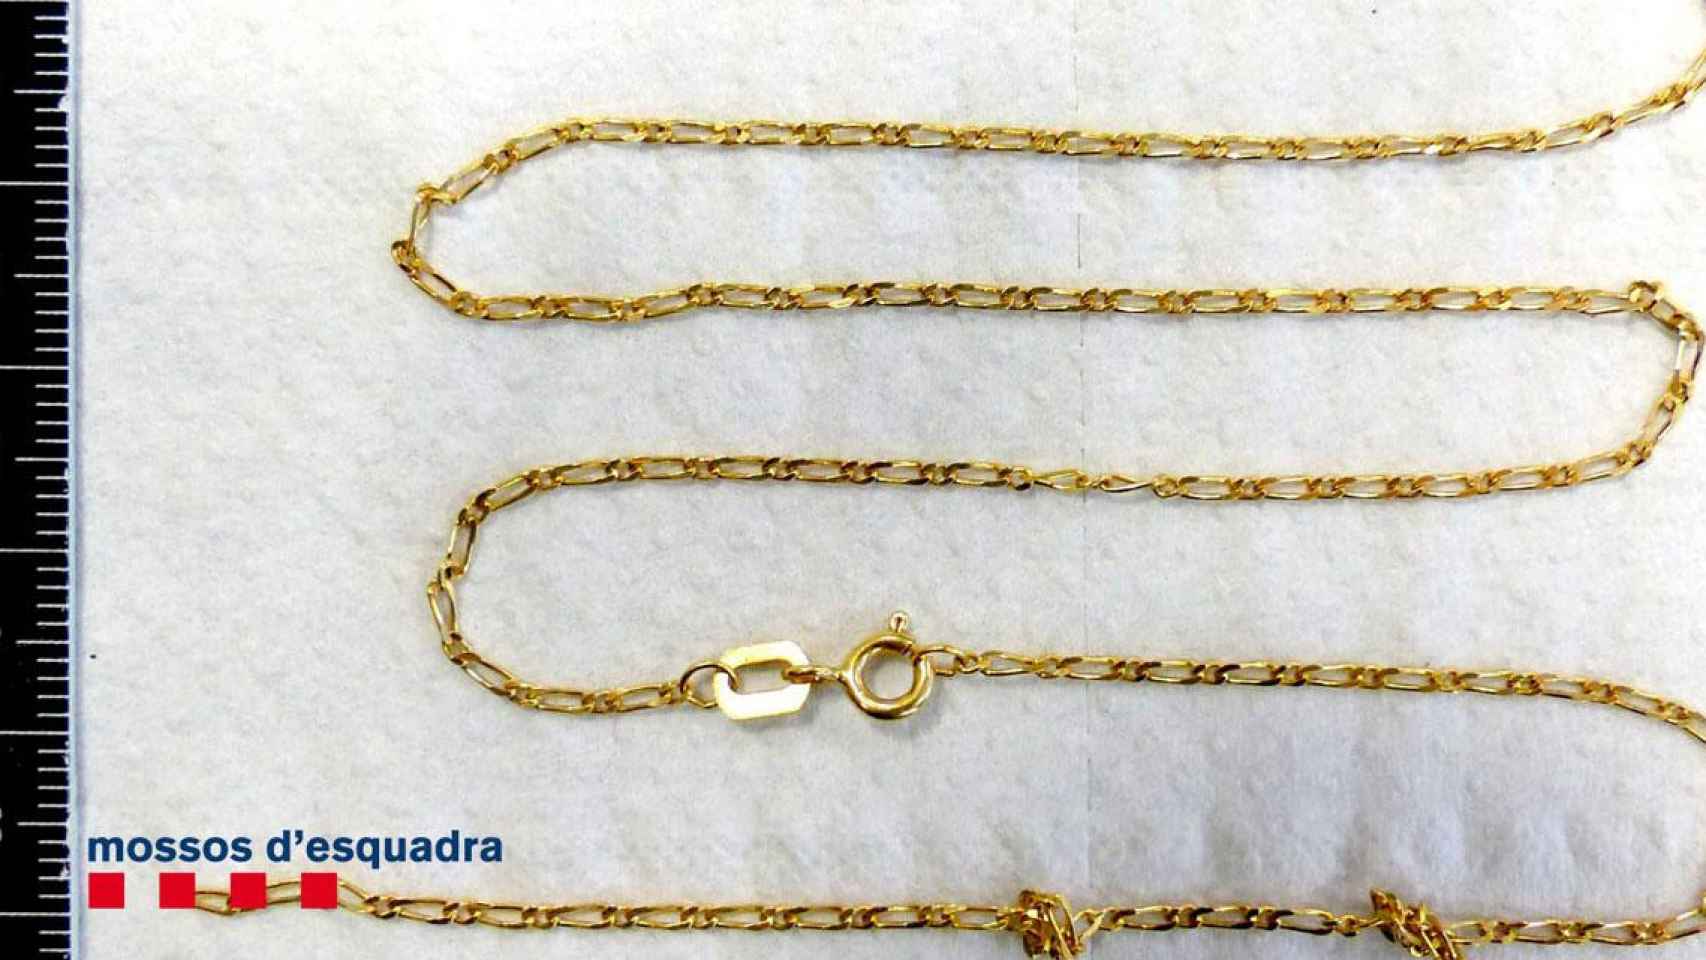 La cadena de oro que el ladrón arrancó del cuello de una mujer en Mataró / MOSSOS